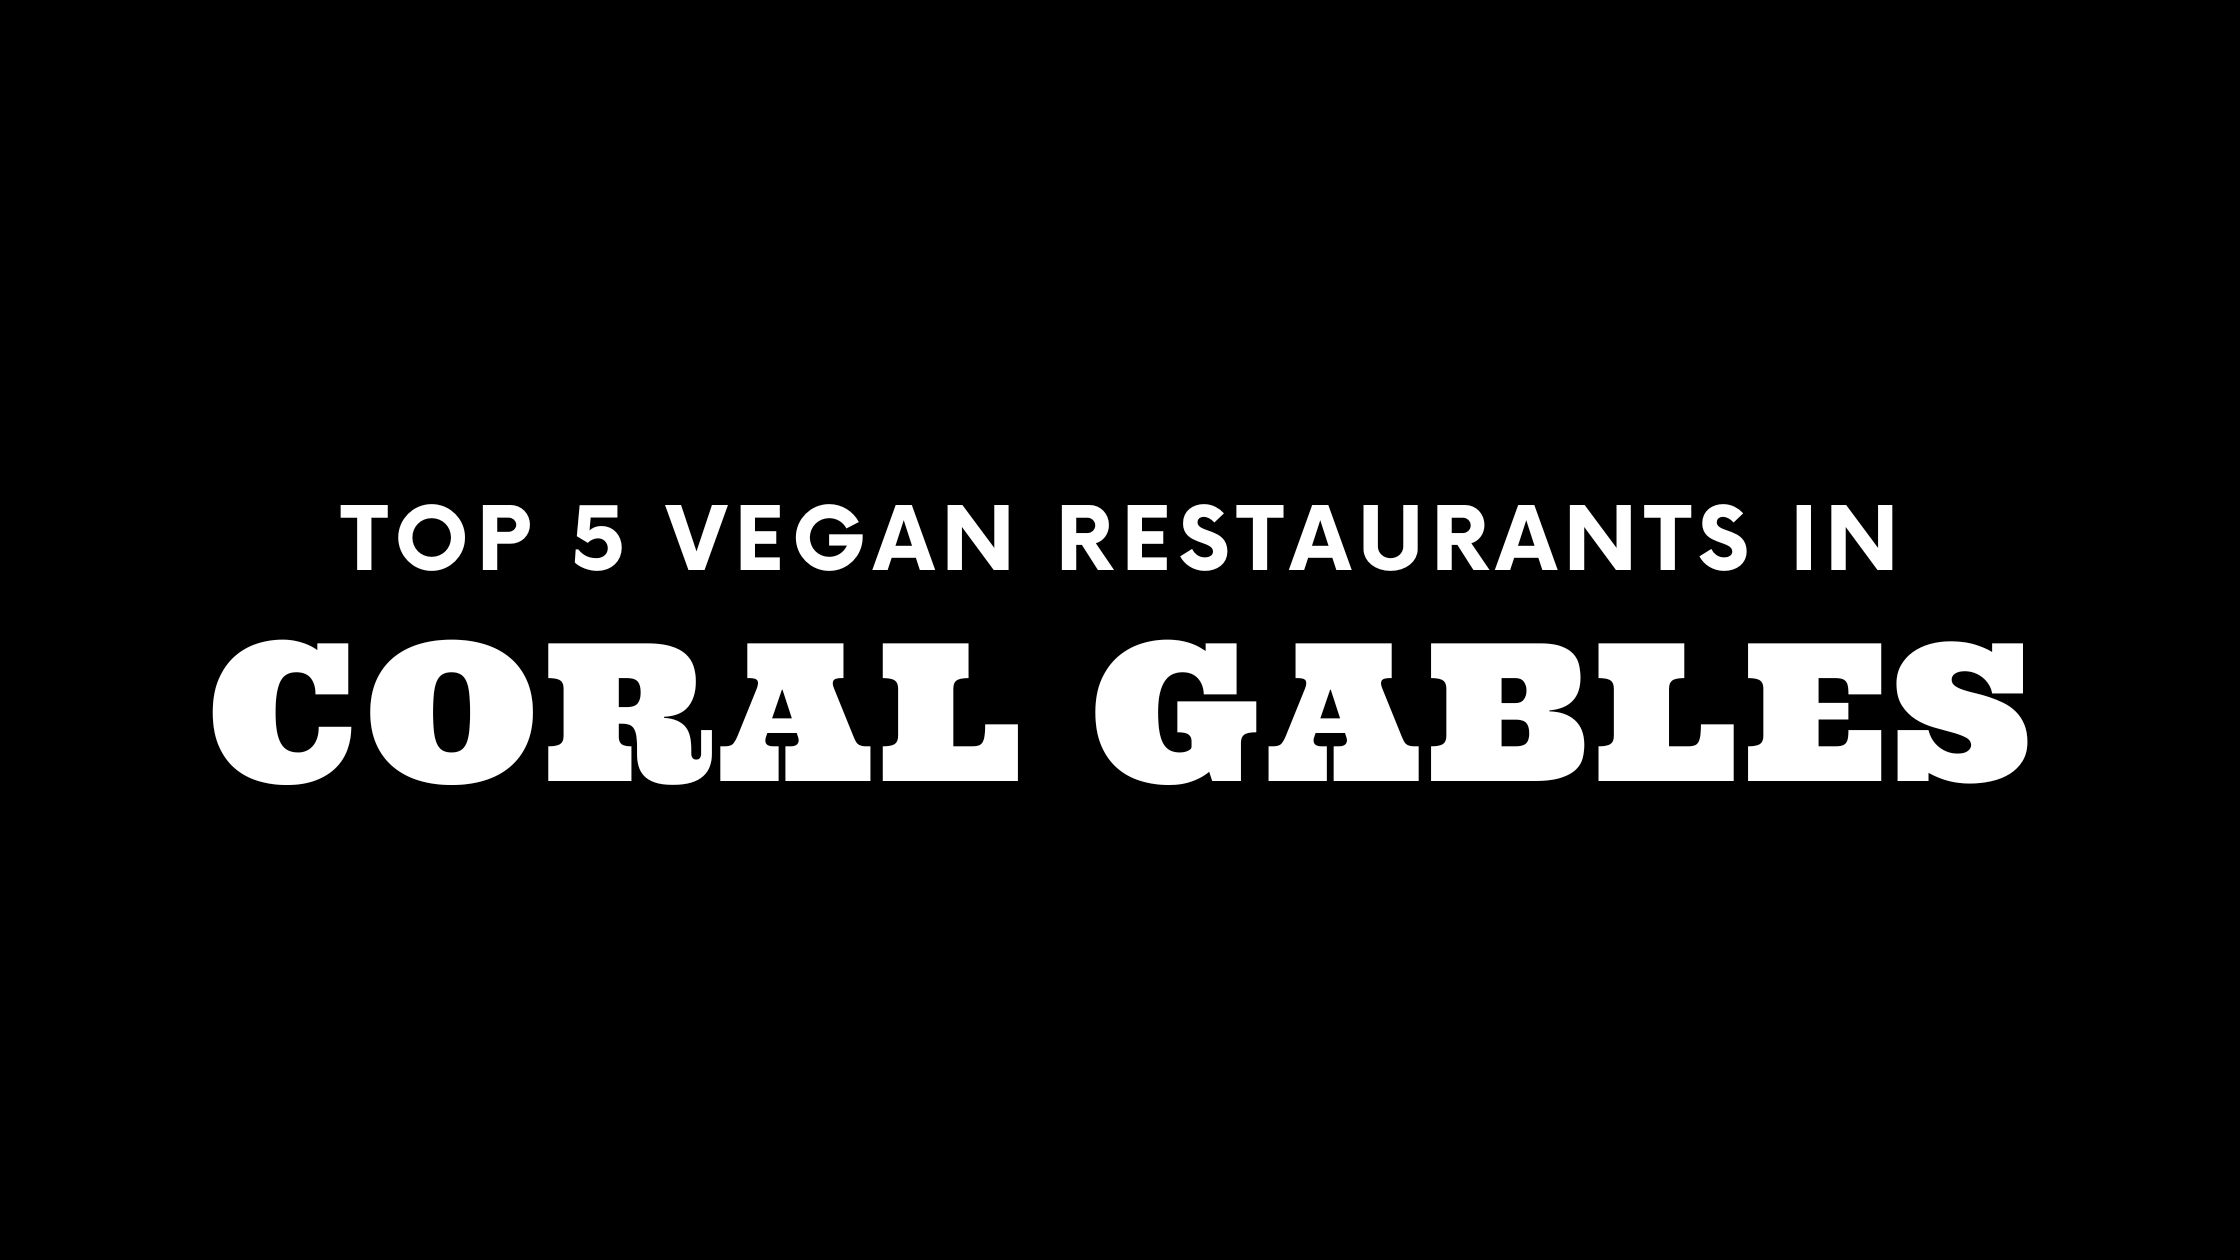 Top 5 Vegan Restaurants in Coral Gables